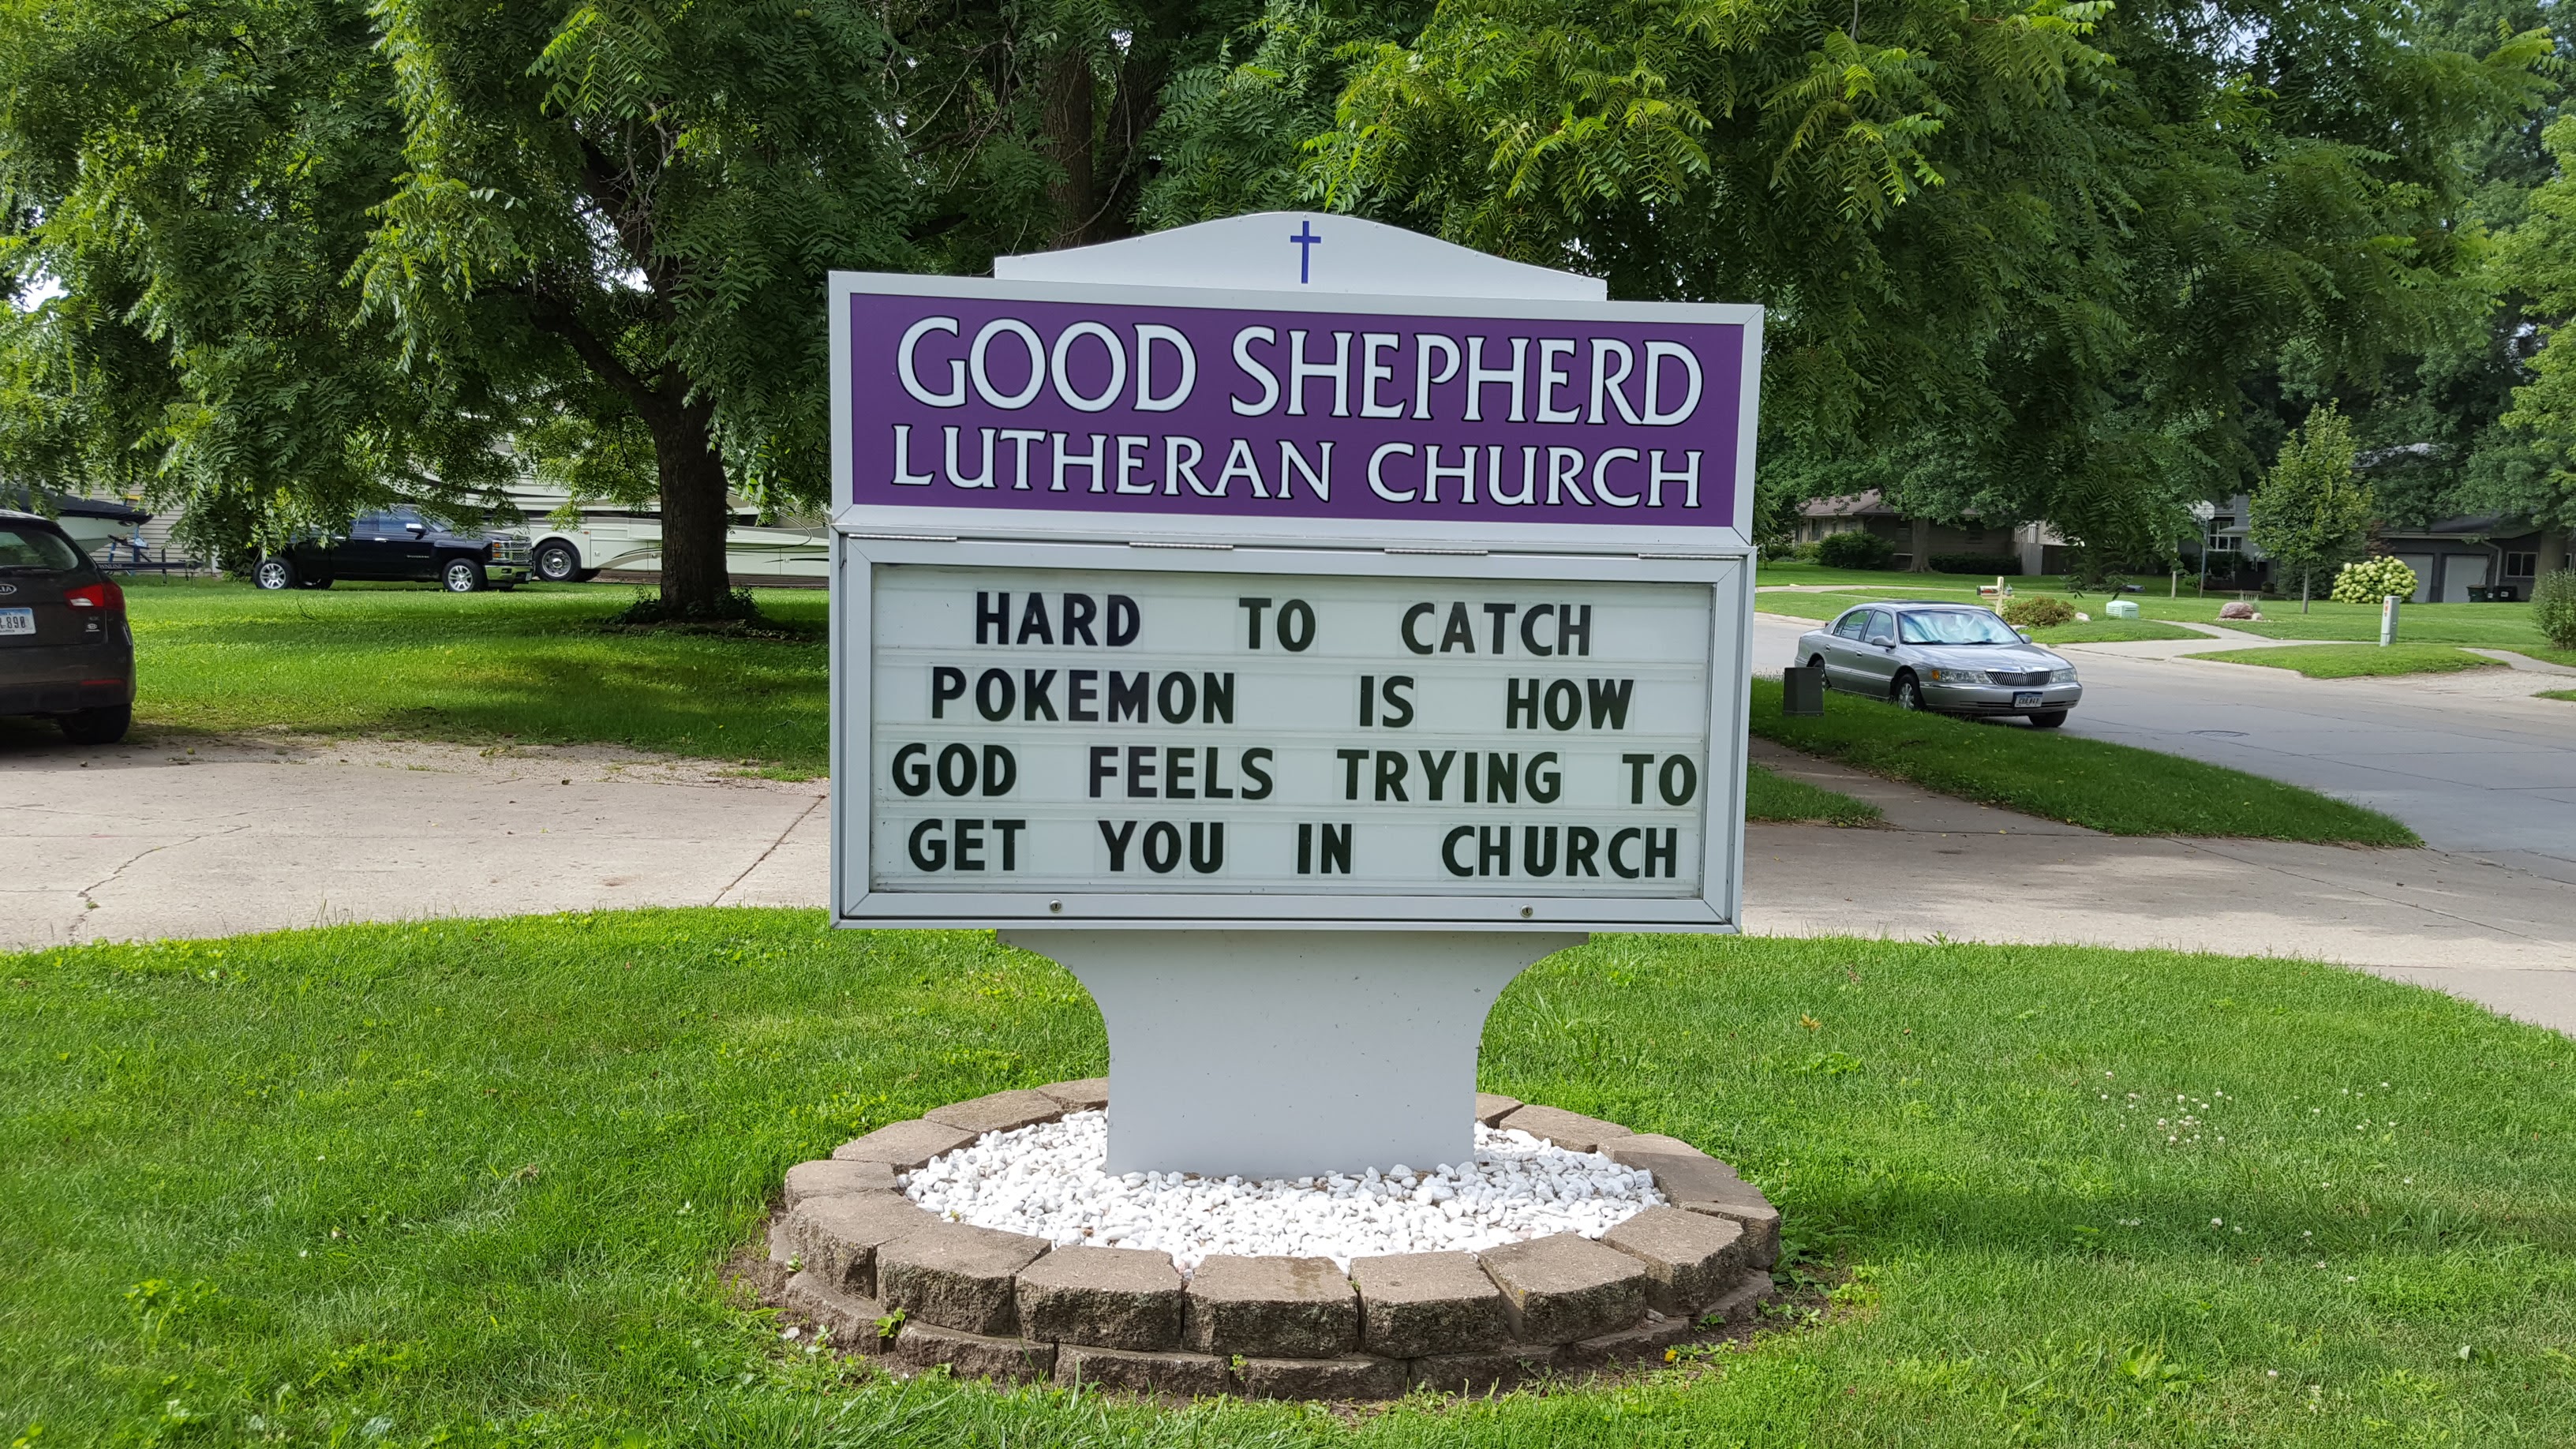 hilarious church signs